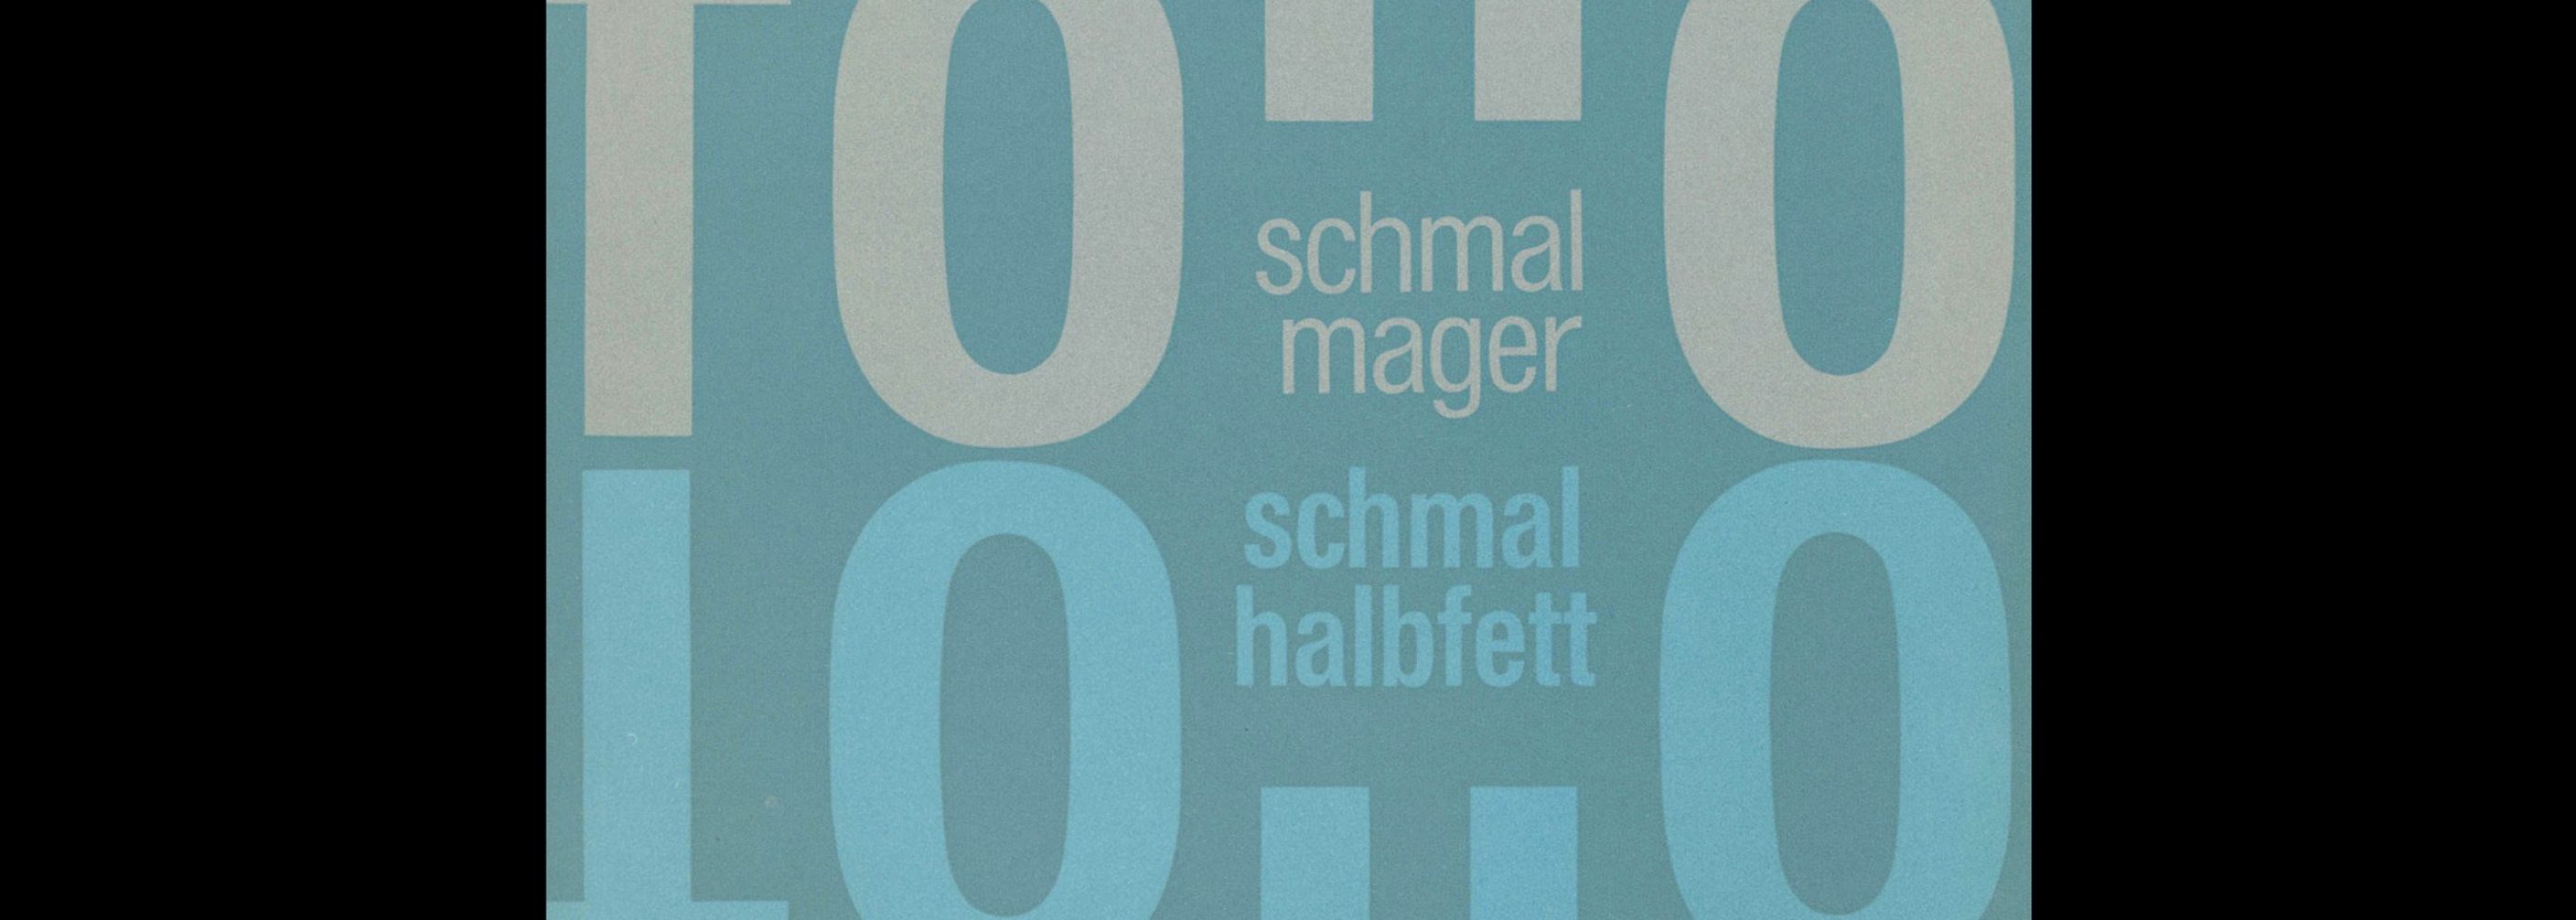 Folio schmalmager, schmal fett, Bauersche Giesserei, Frankfurt am Main, Type Specimen with Samples